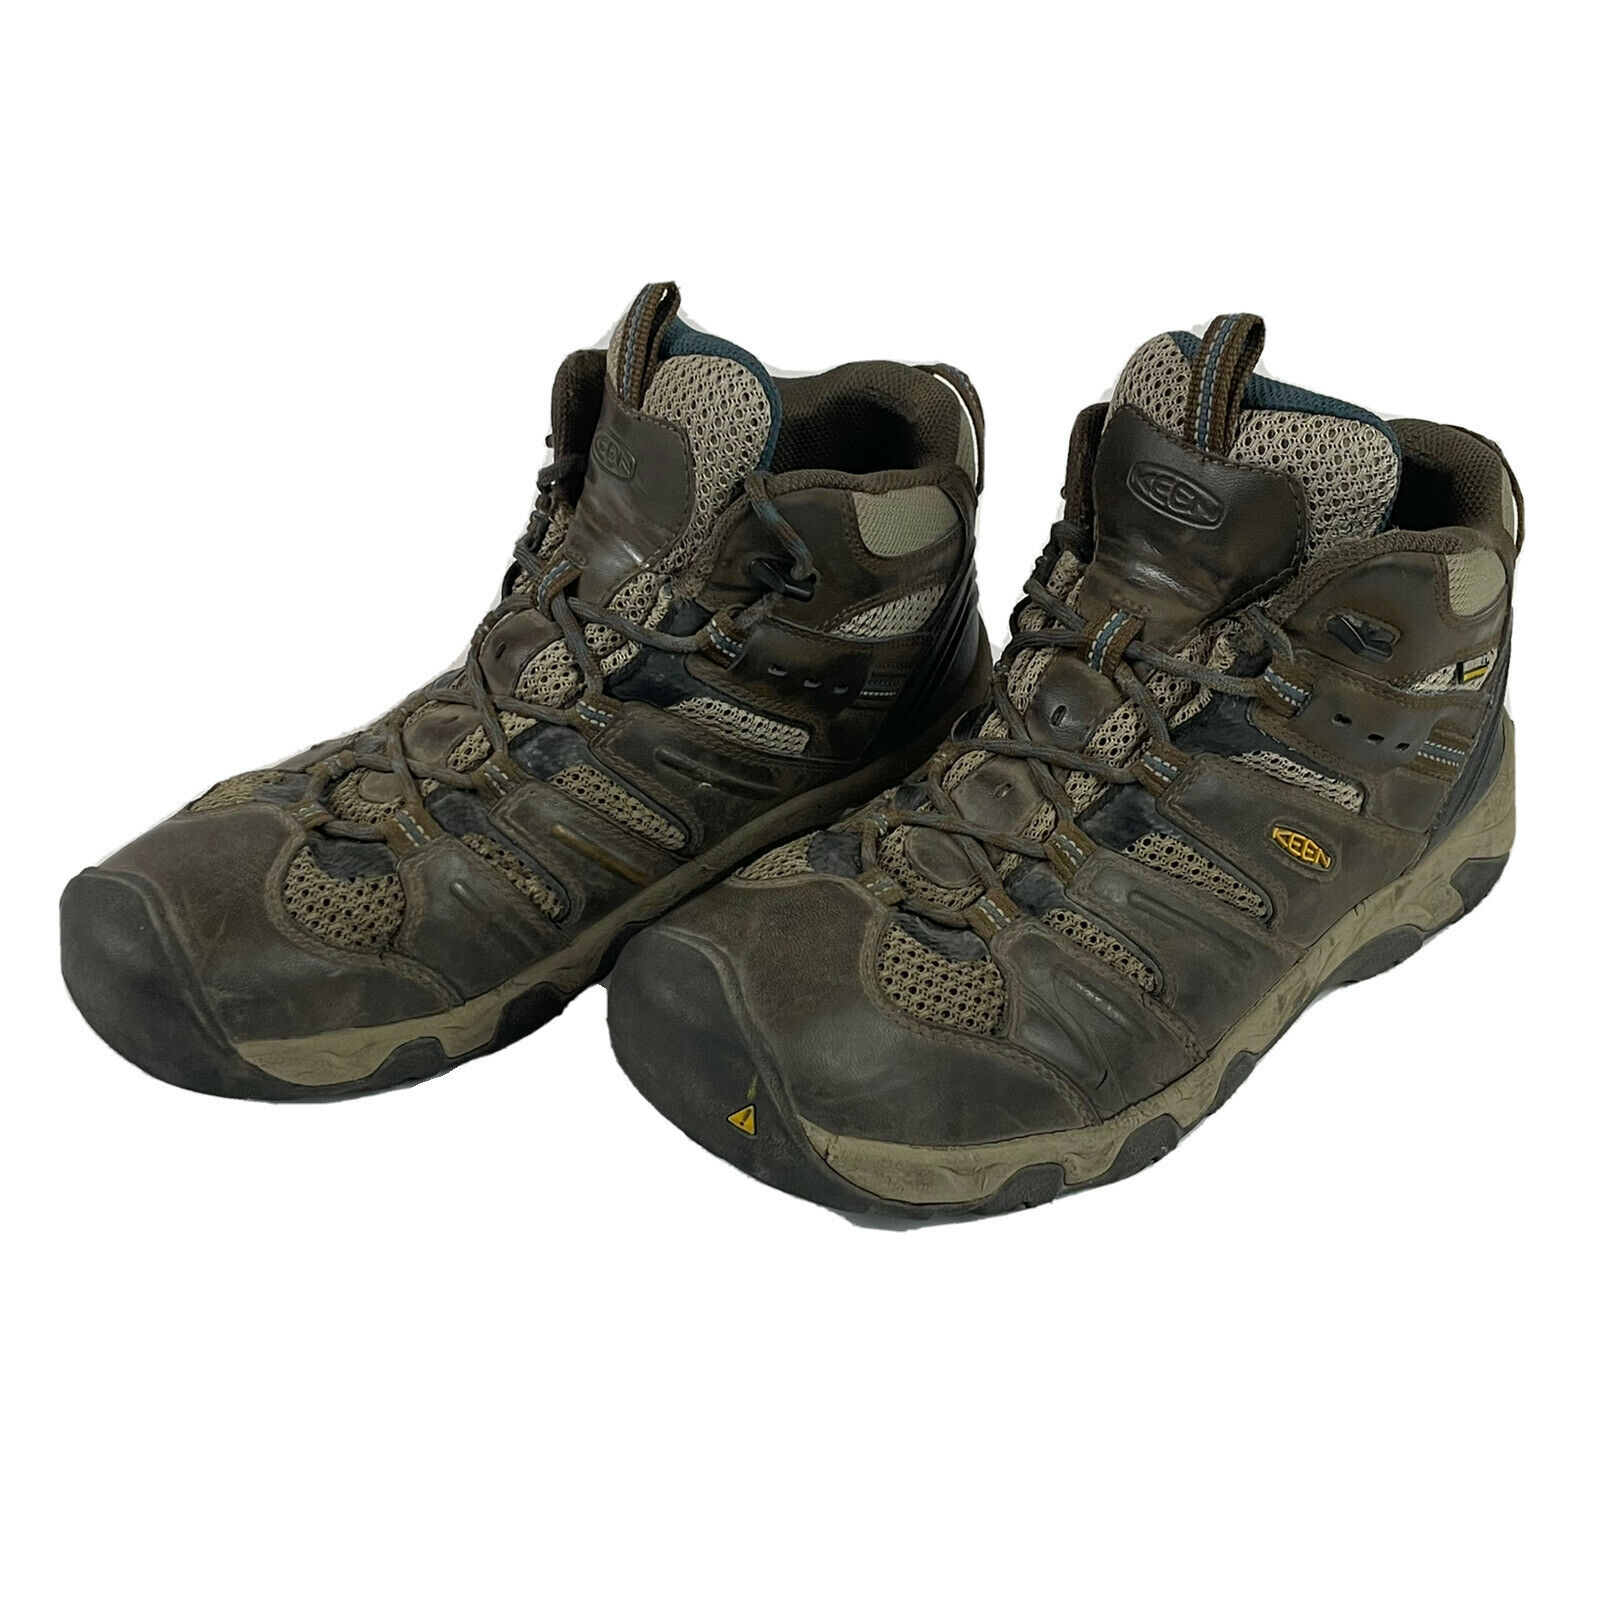 Keen Targhee II Waterproof Brown Leather Hiking Boots Men’s 10 EUR 43